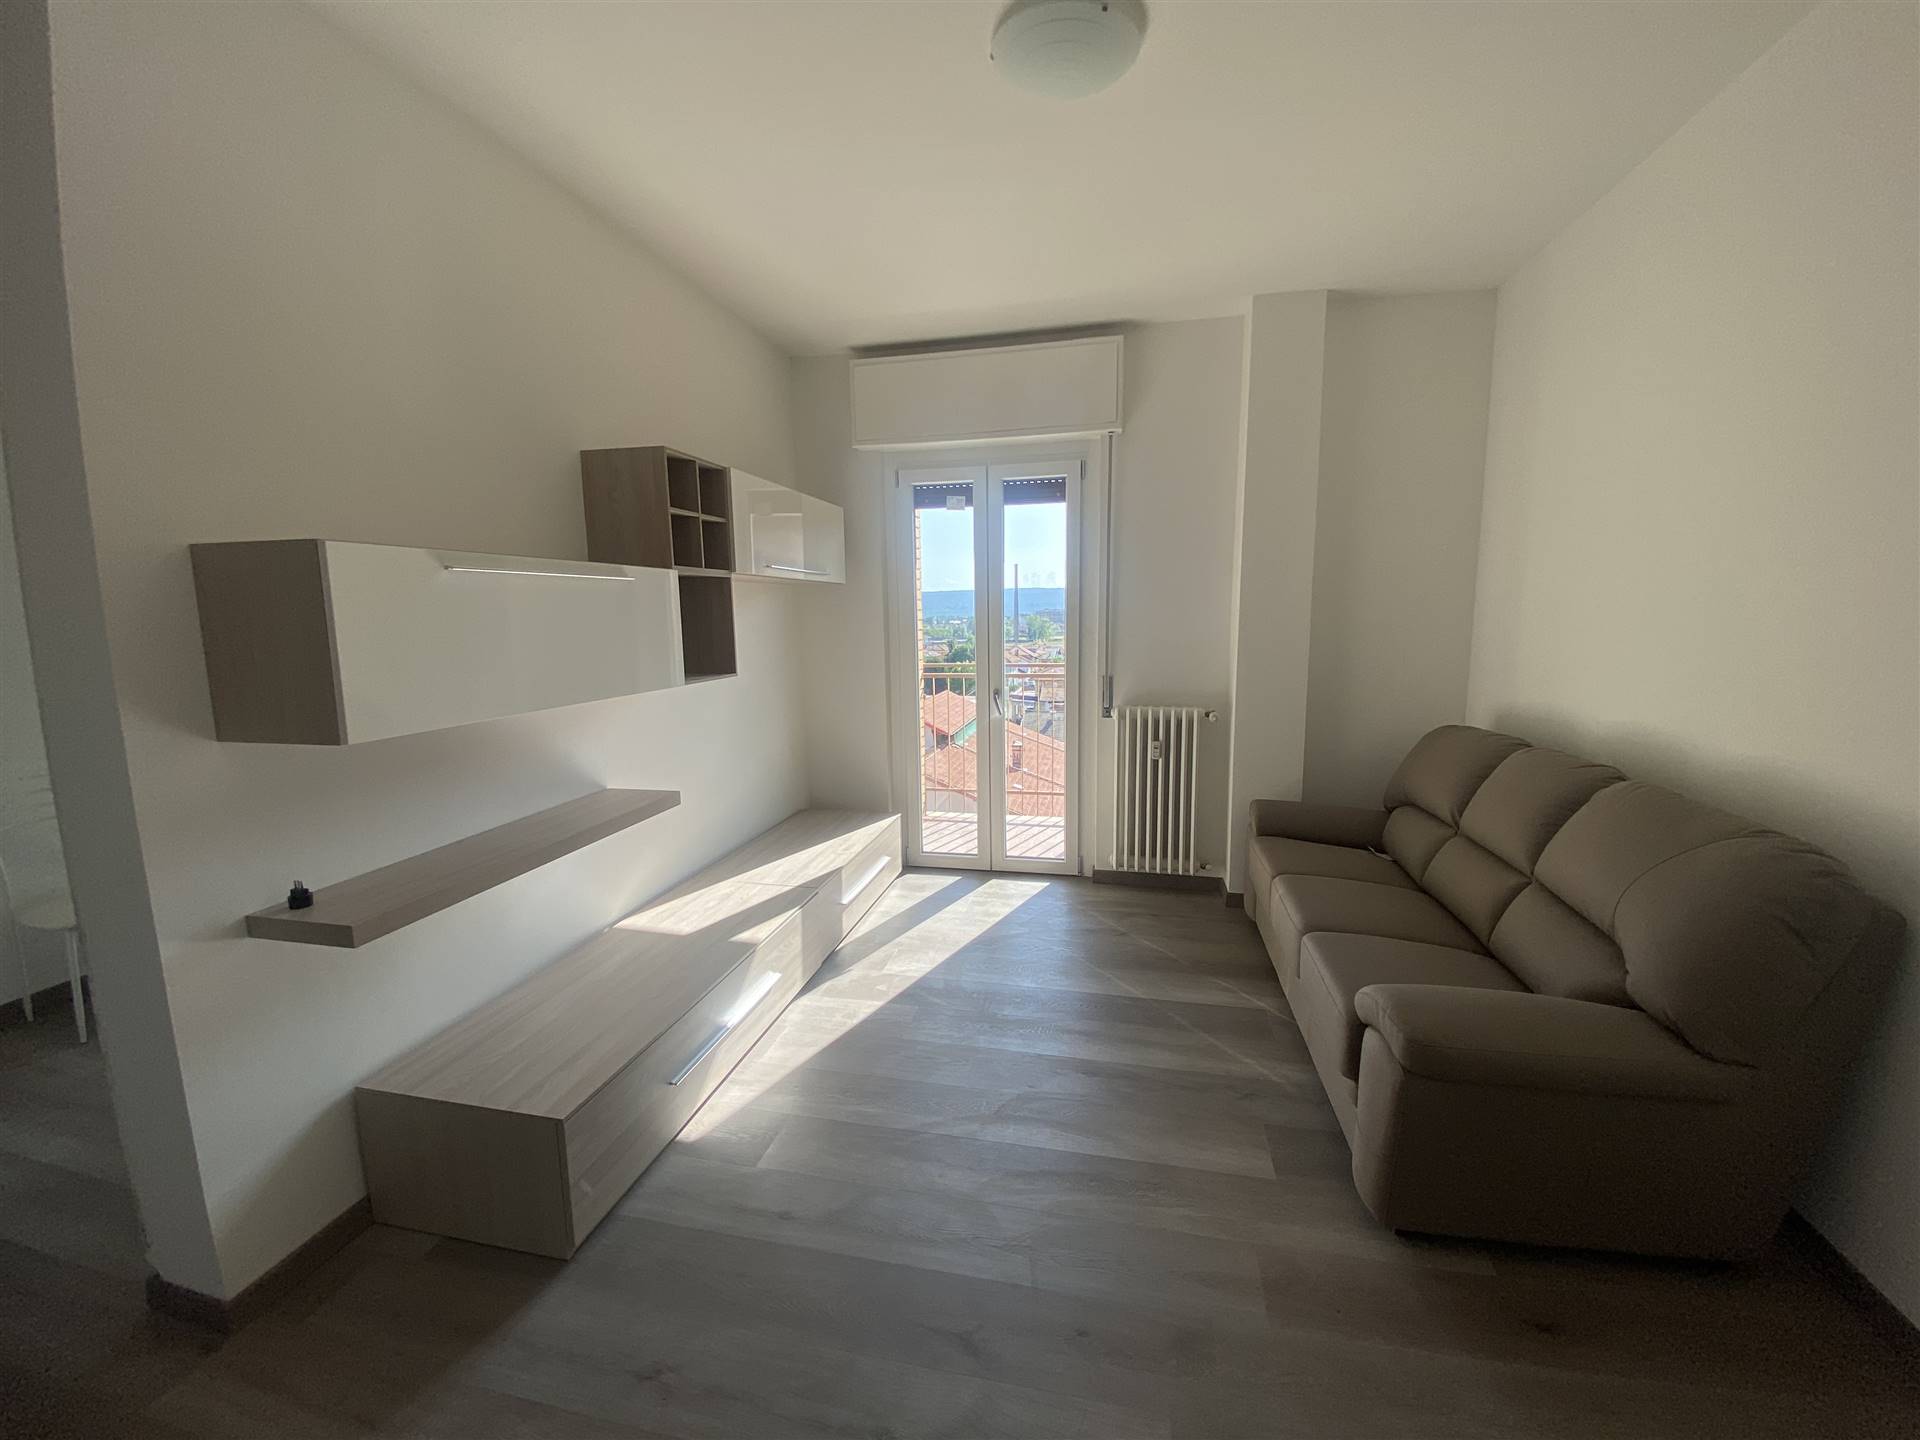 Appartamento in affitto a Gaglianico, 3 locali, prezzo € 450 | CambioCasa.it